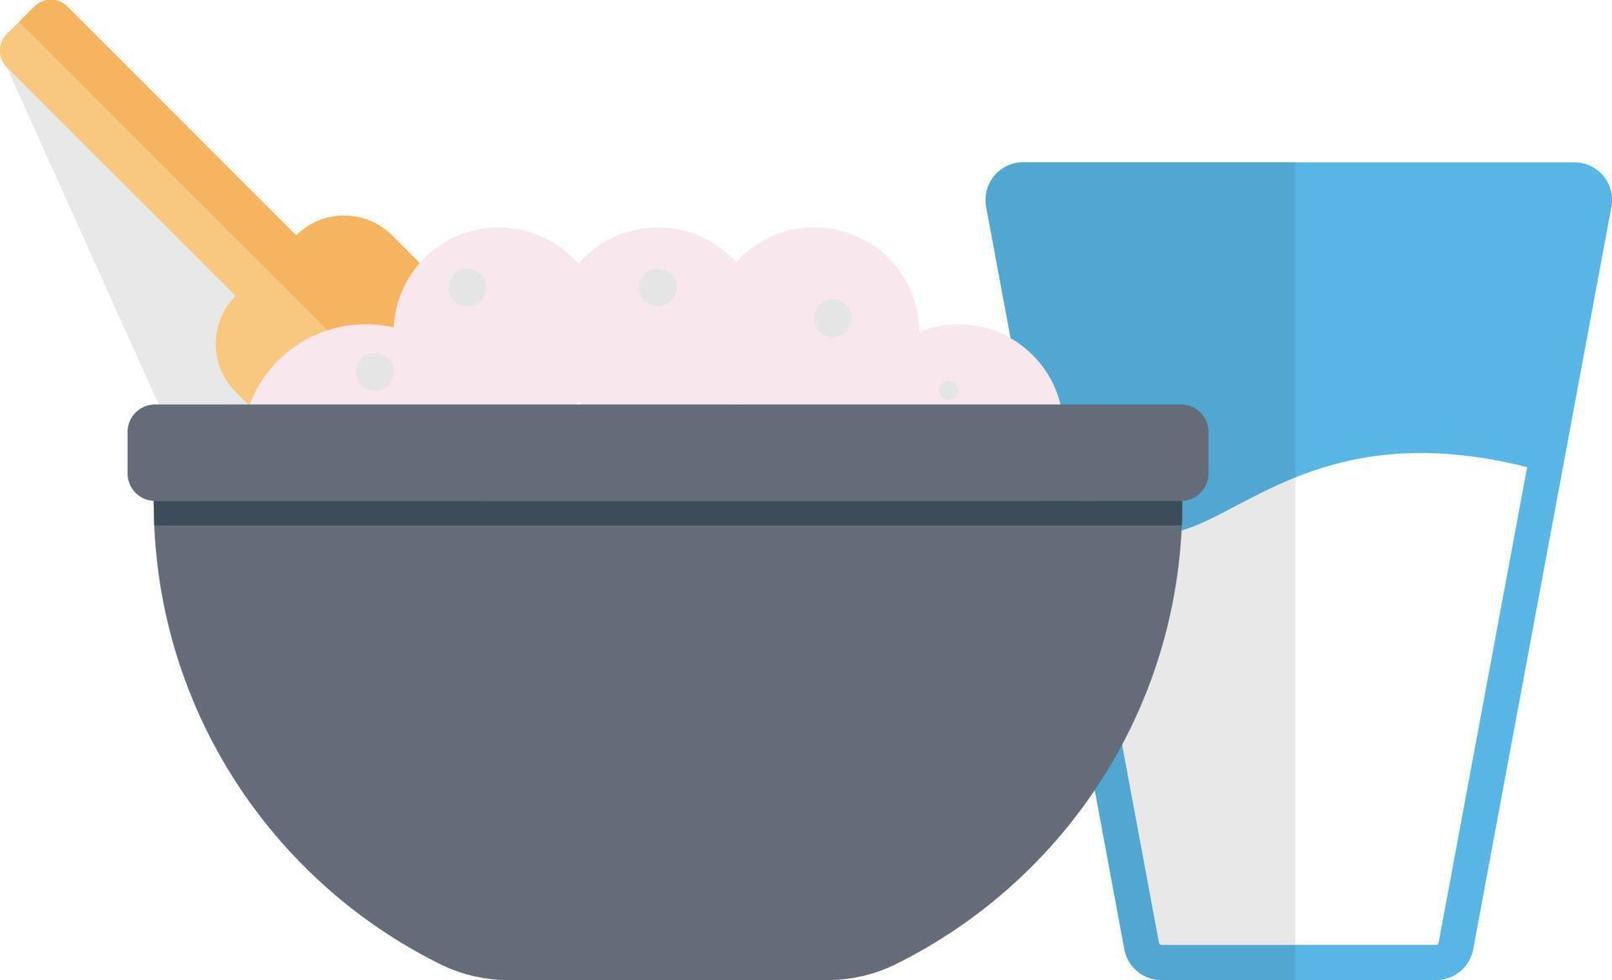 ilustración de vector de tazón de comida en un fondo. símbolos de calidad premium. iconos vectoriales para concepto y diseño gráfico.